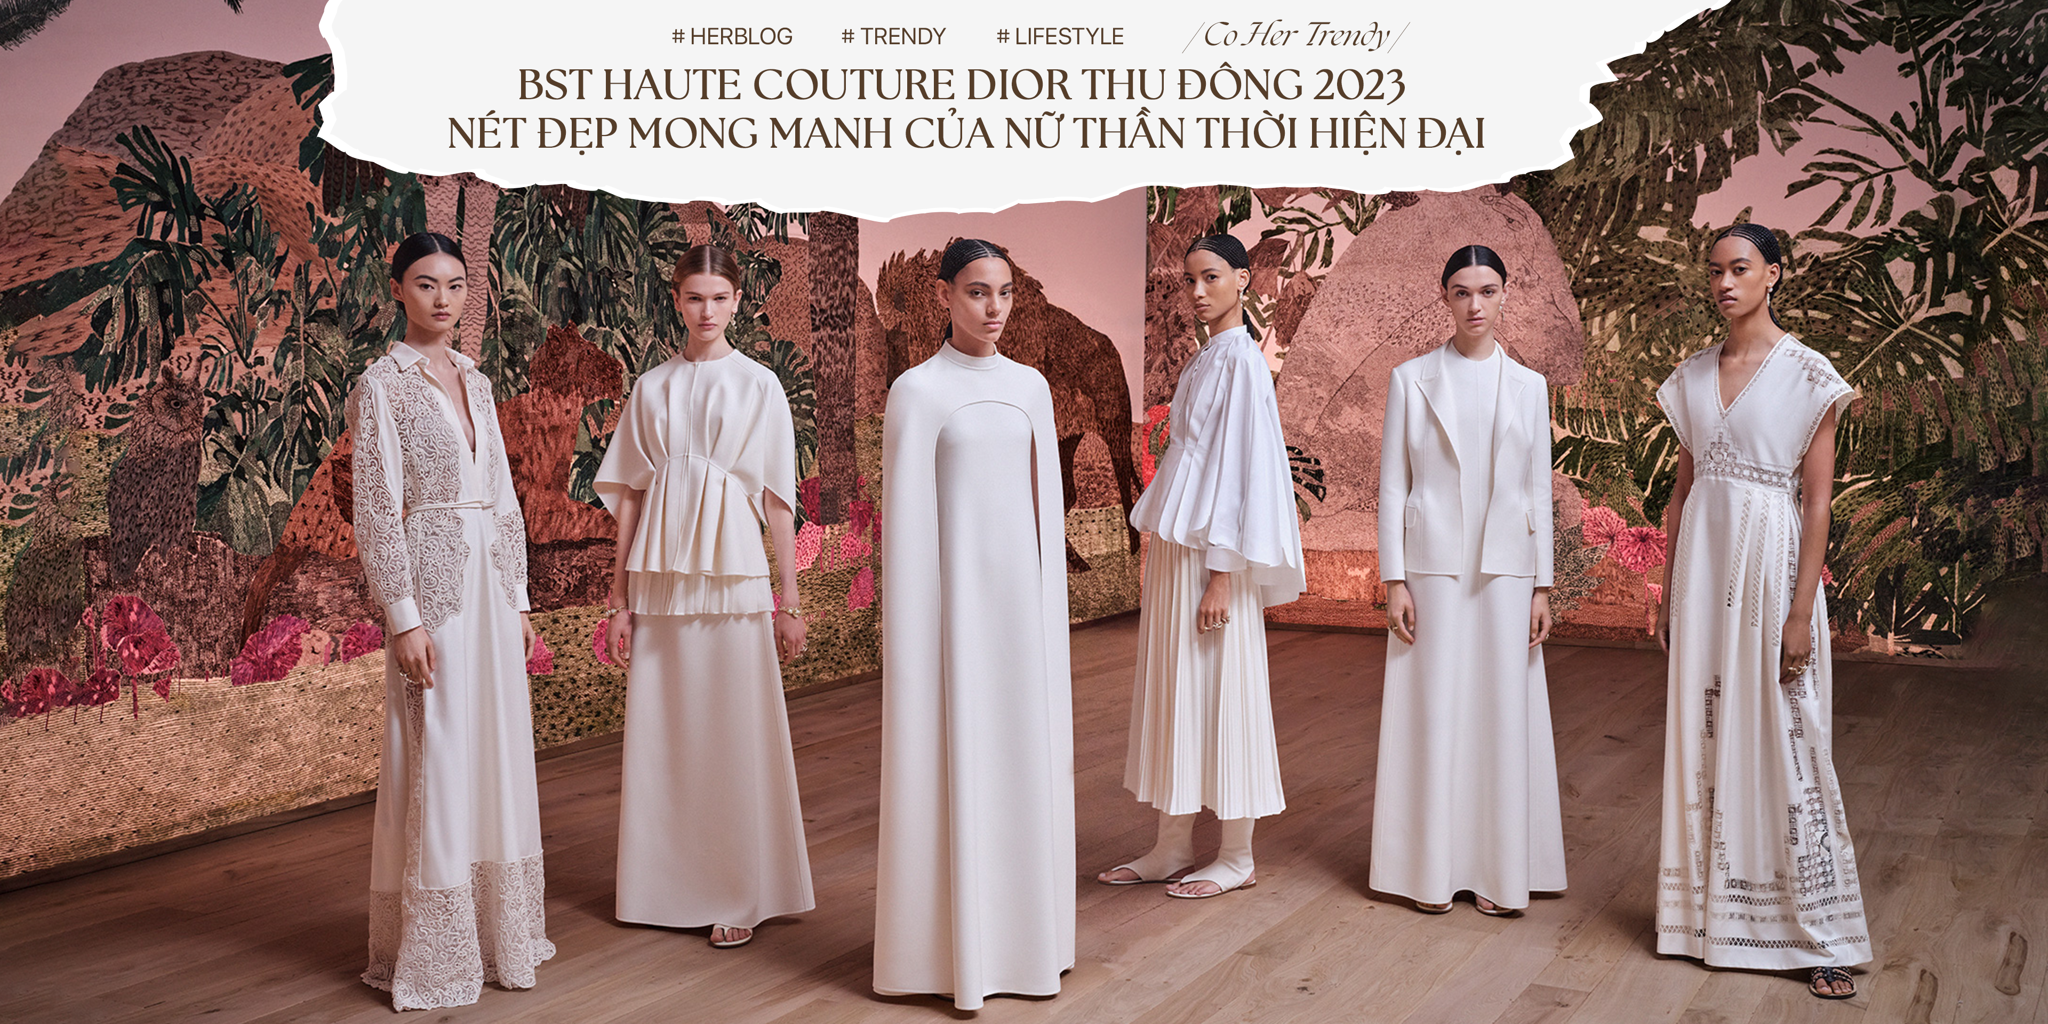 [CÔ HER TRENDY] BST Dior Thu Đông 2023: Nét đẹp mong manh của nữ thần thời hiện đại